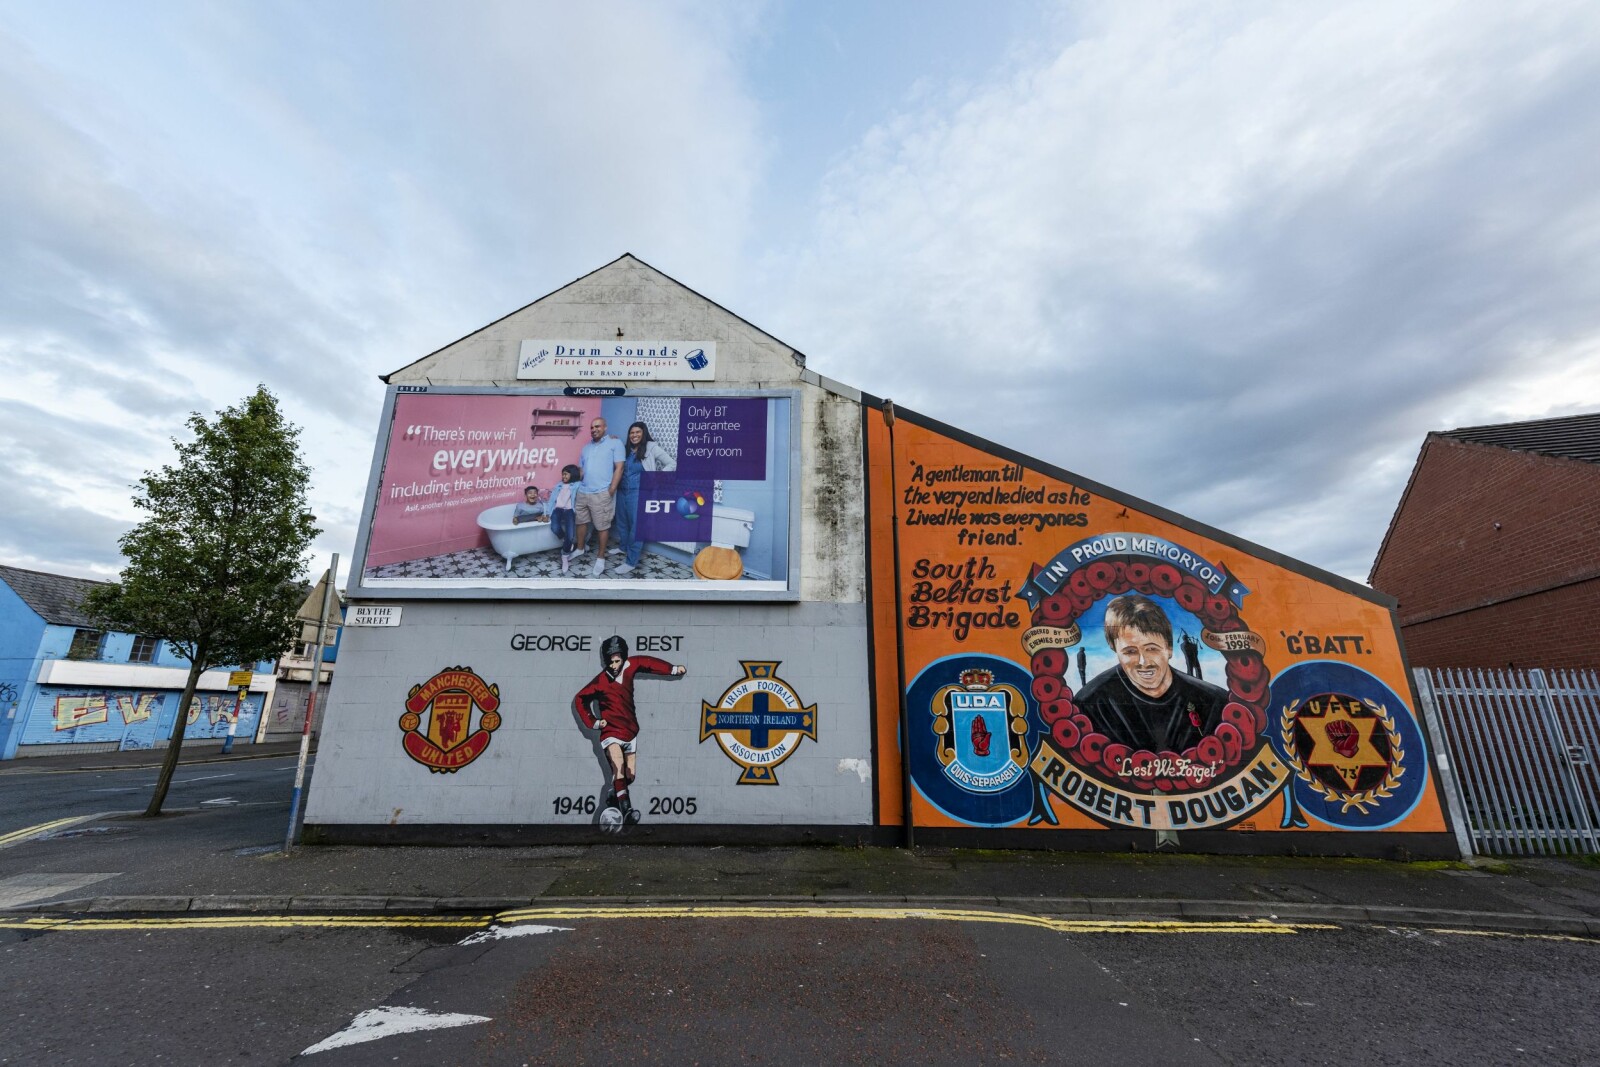 <b>FOTBALL OG DØD:</b> Hyllest til fotballspilleren Georg Best og den protestantiske paramilitære helten Robert Dougan som ble skutt og drept i Dunmurry i 1998.